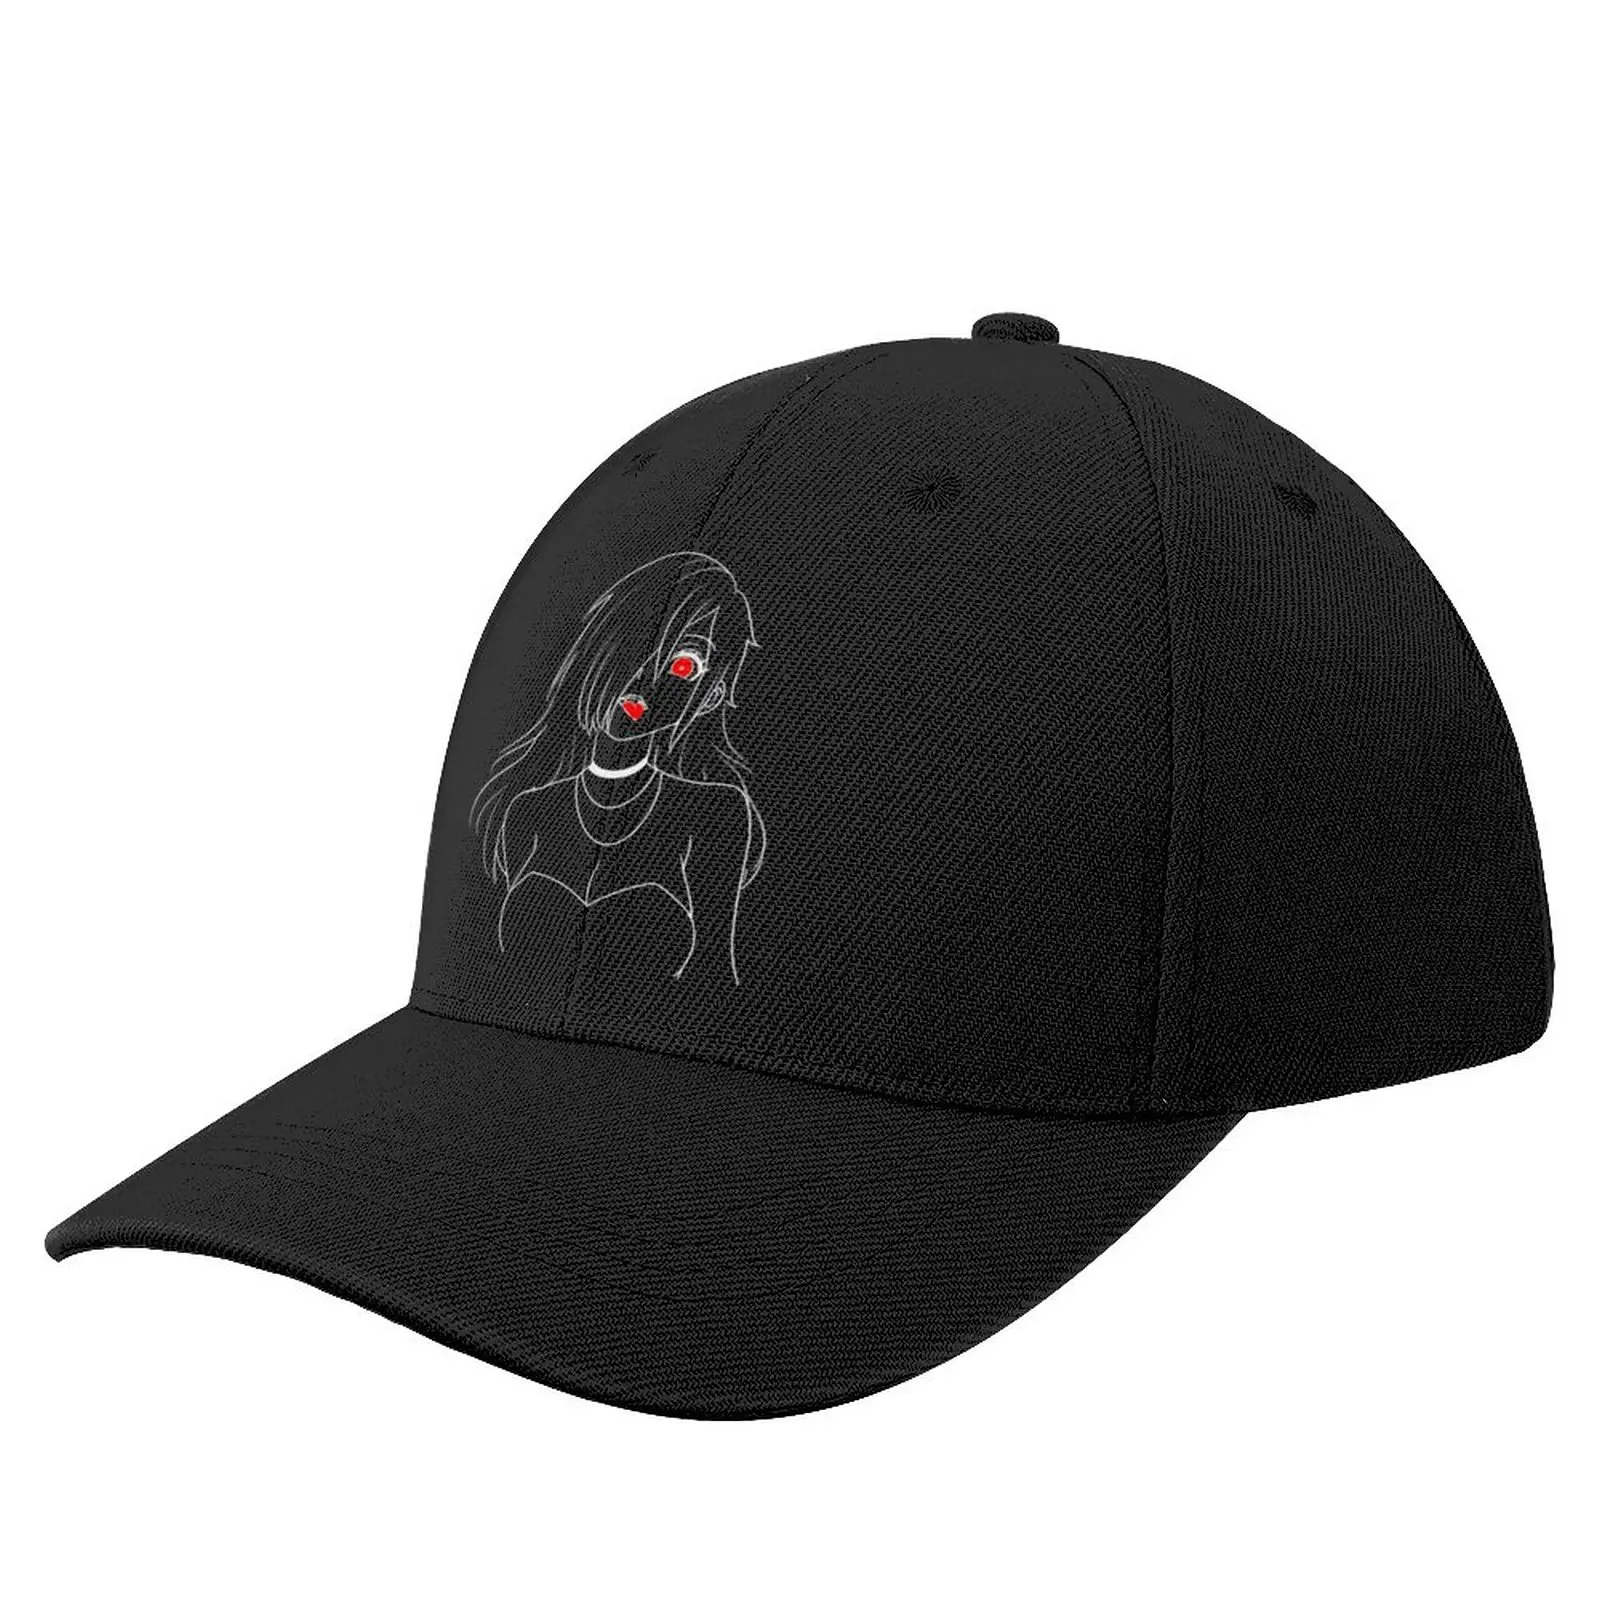 

Yandere ahegao Baseball Cap Fishing Caps Gentleman Hat Women Hats Men's